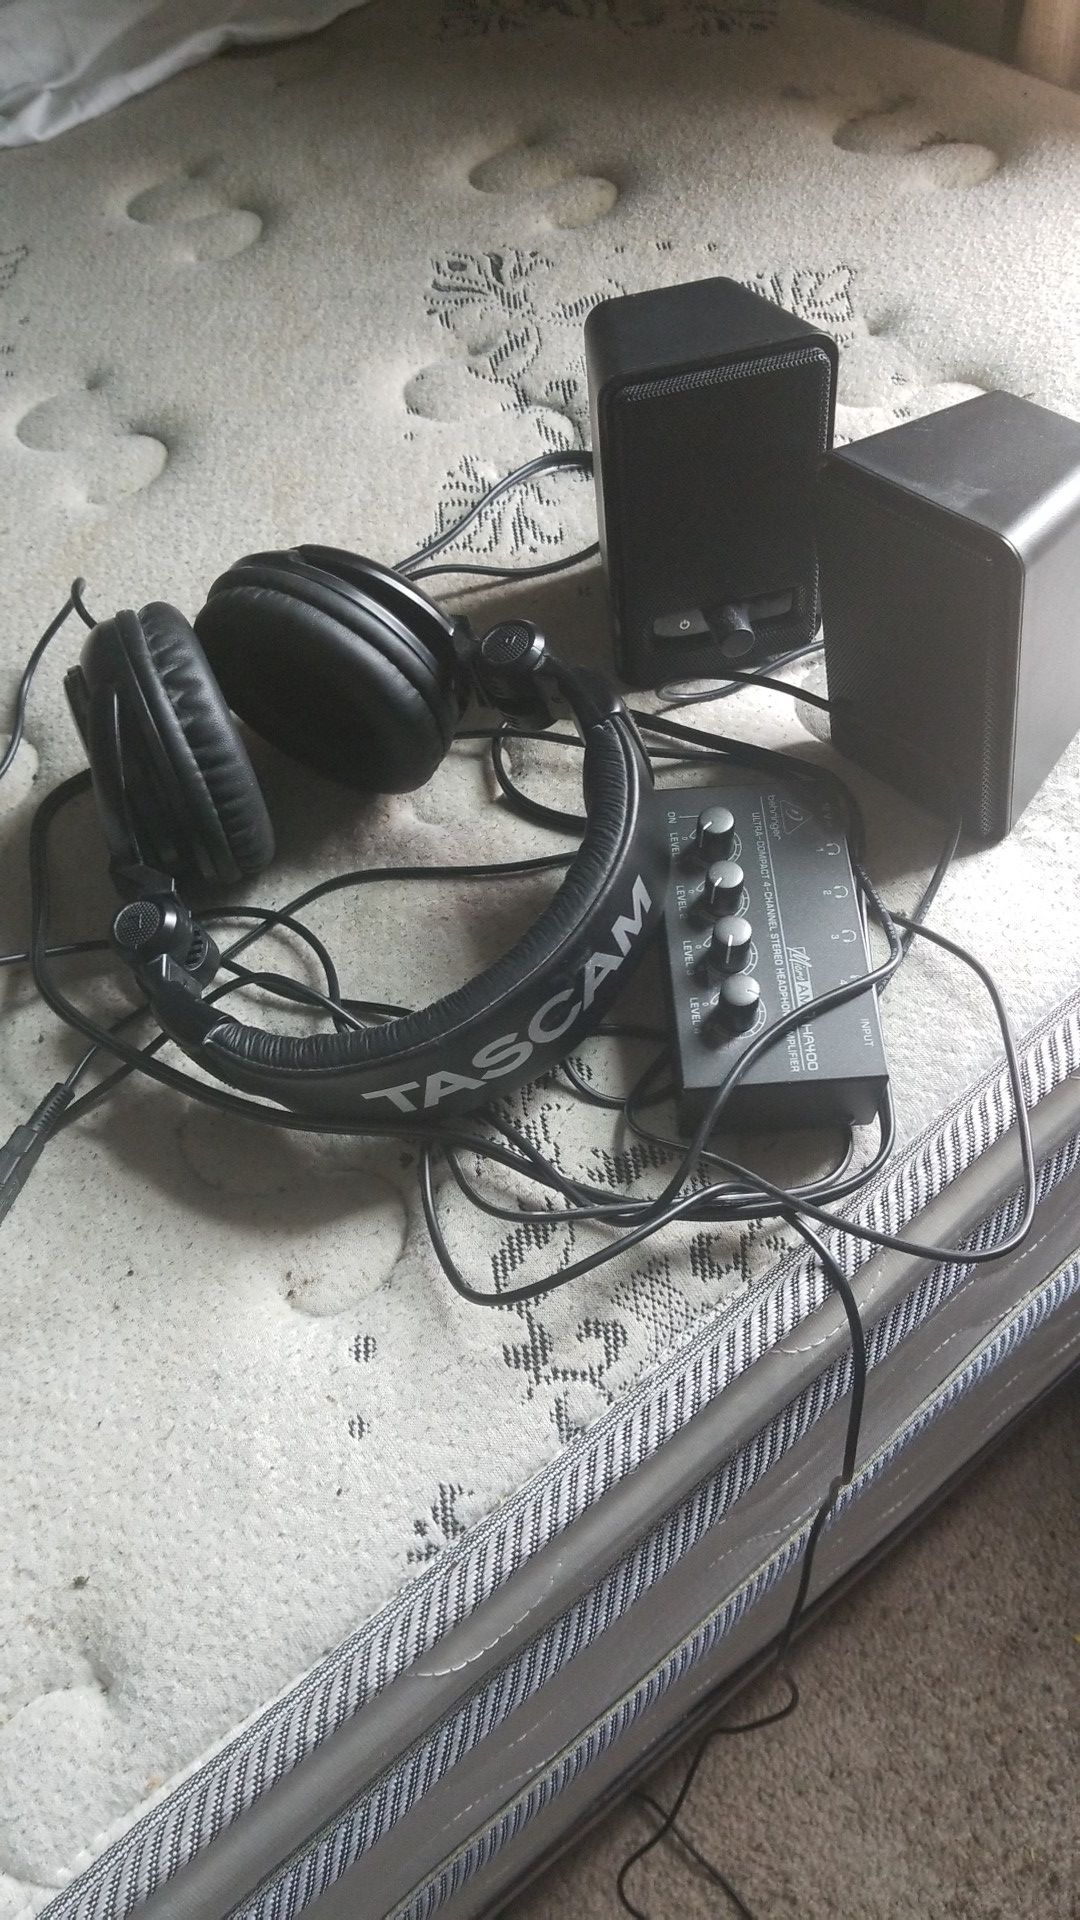 Tascam headset, Amazon speakers, Headphones amplifier